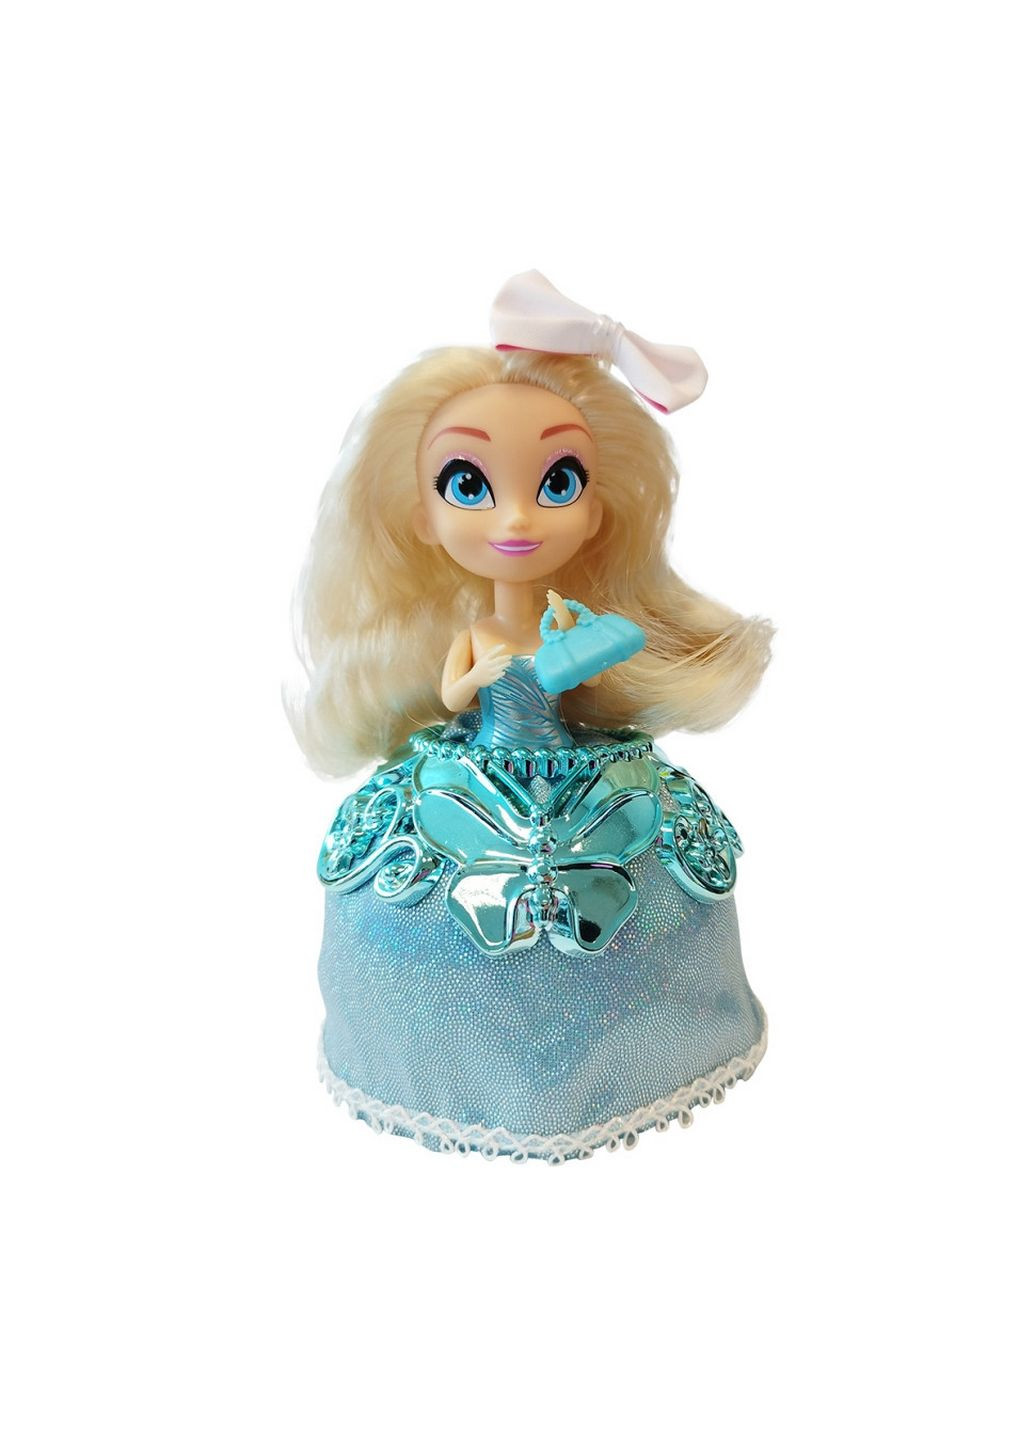 Дитяча лялька Черрі Блоссом з аксесуарами 15х16х10 см Perfumies (289369736)